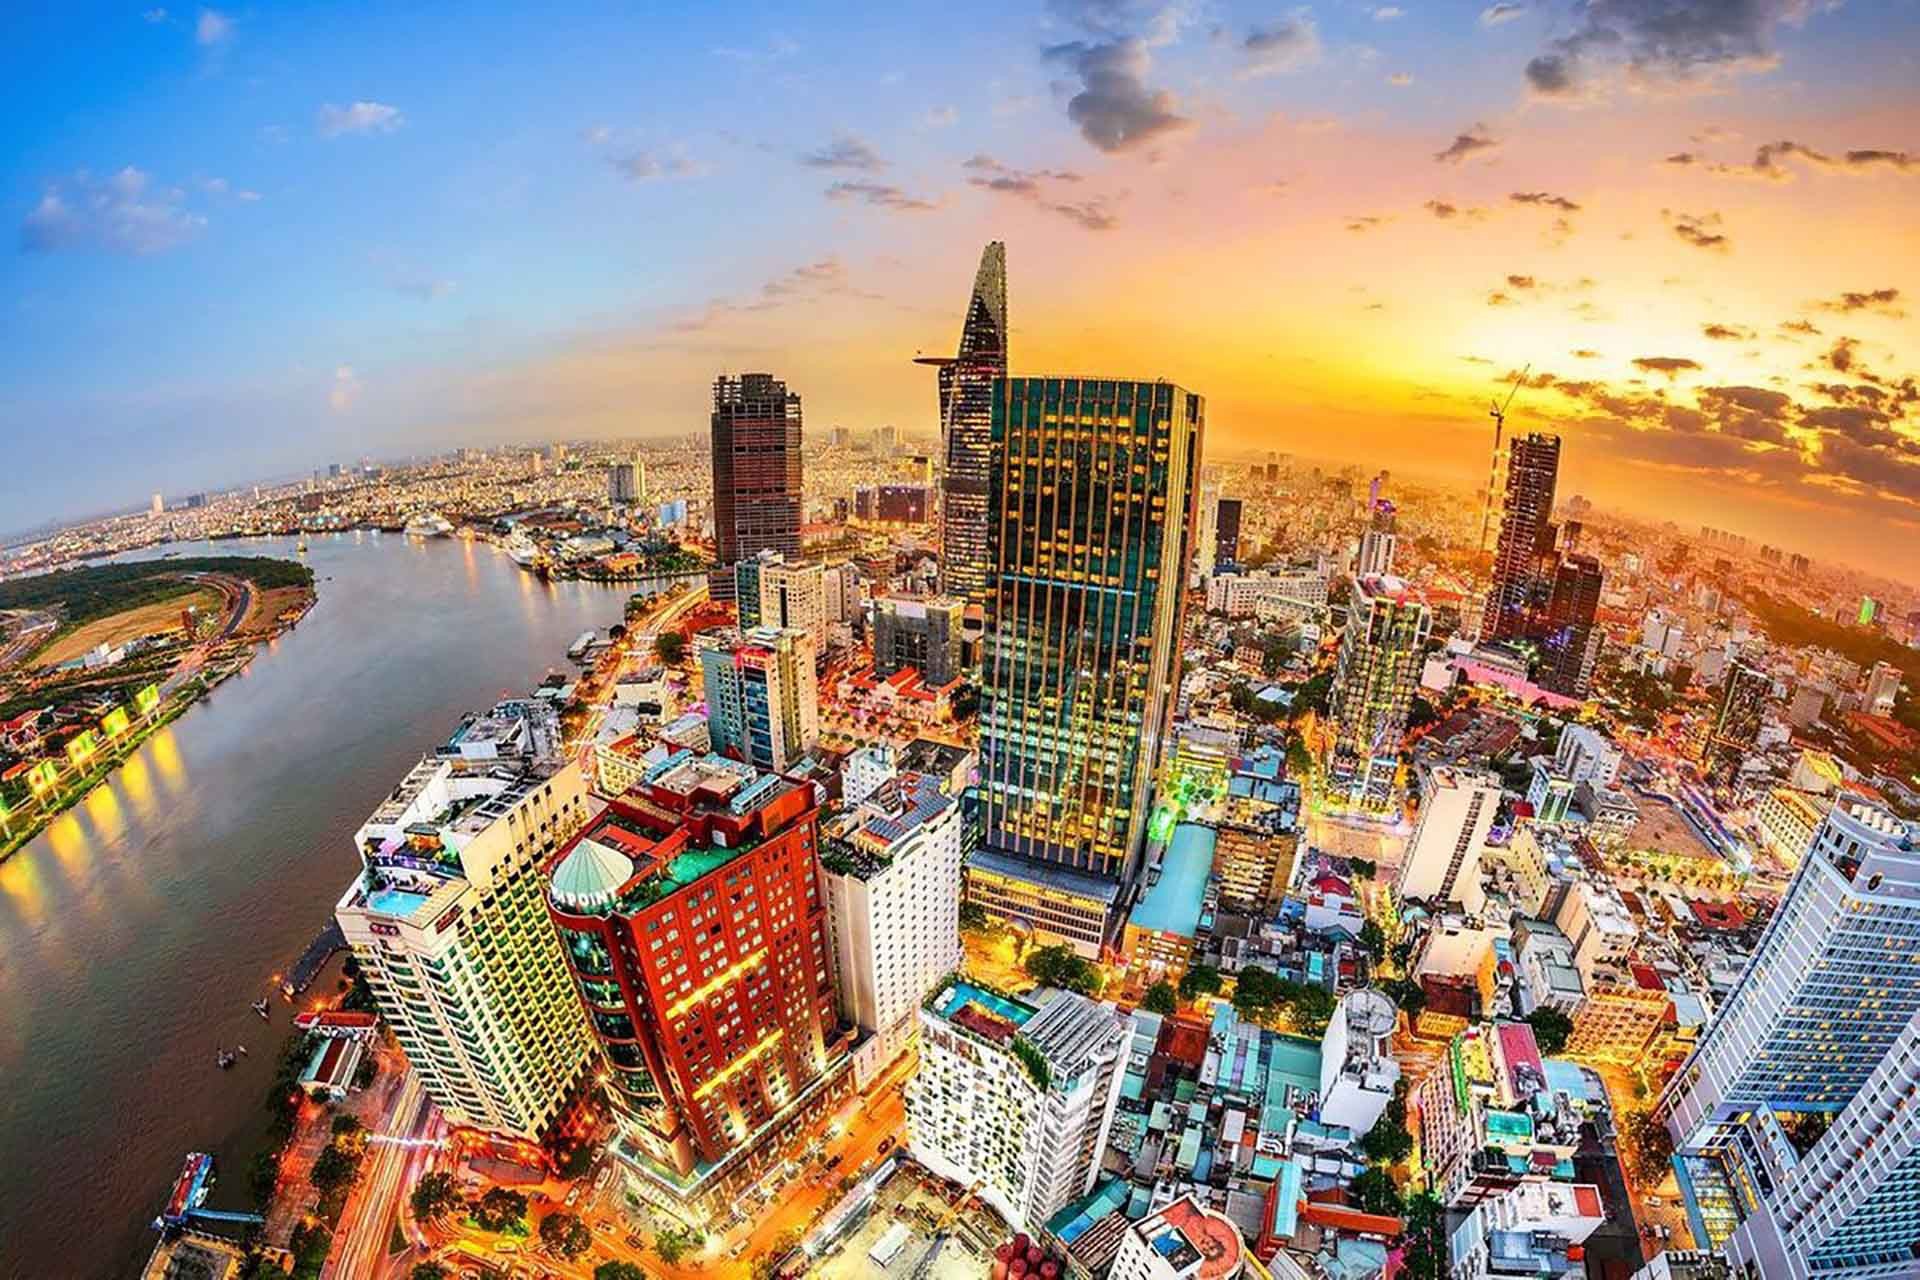 Quỹ Tiền tệ quốc tế (IMF) dự báo kinh tế Việt Nam tăng trưởng 6% trong năm 2022.